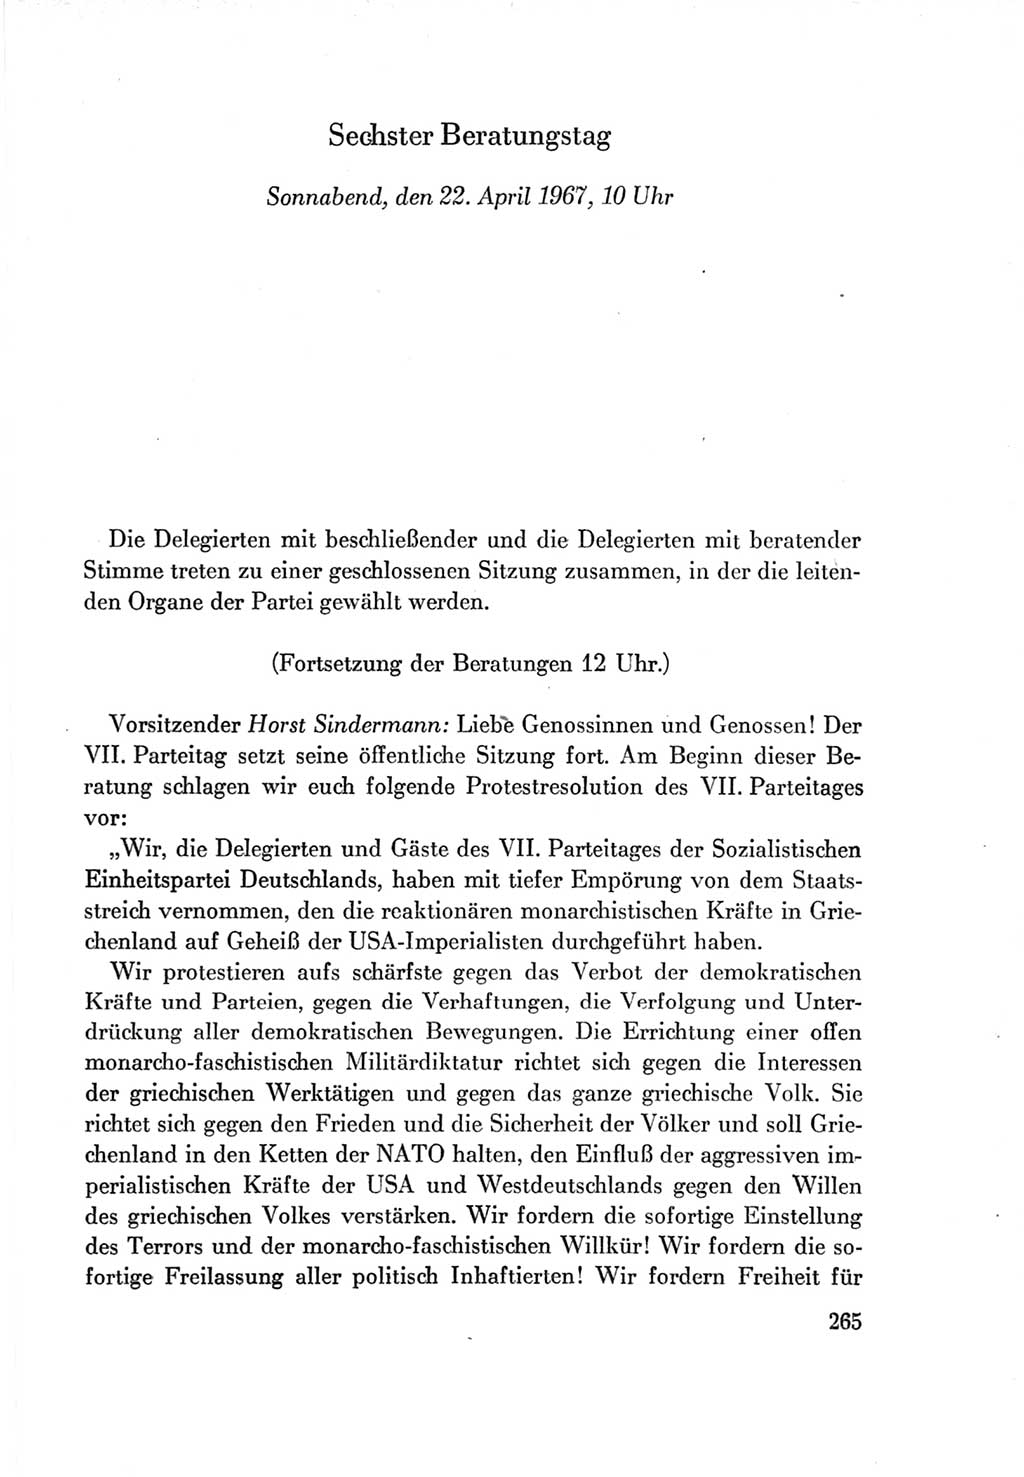 Protokoll der Verhandlungen des Ⅶ. Parteitages der Sozialistischen Einheitspartei Deutschlands (SED) [Deutsche Demokratische Republik (DDR)] 1967, Band Ⅱ, Seite 265 (Prot. Verh. Ⅶ. PT SED DDR 1967, Bd. Ⅱ, S. 265)